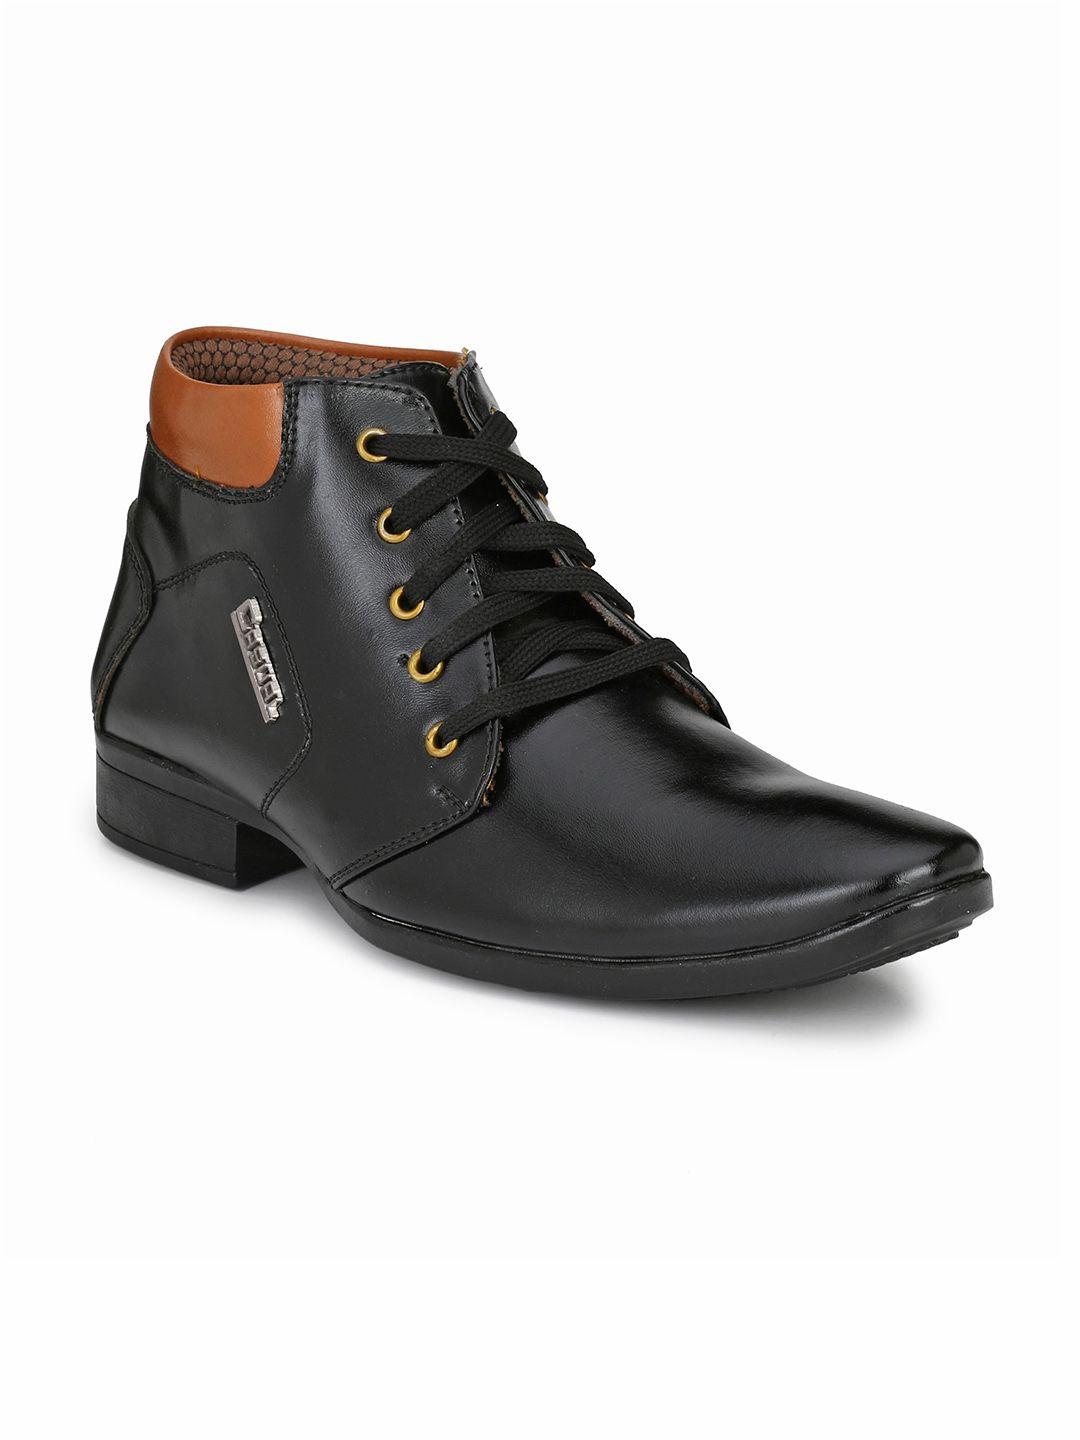 hundo p men black solid formal boots